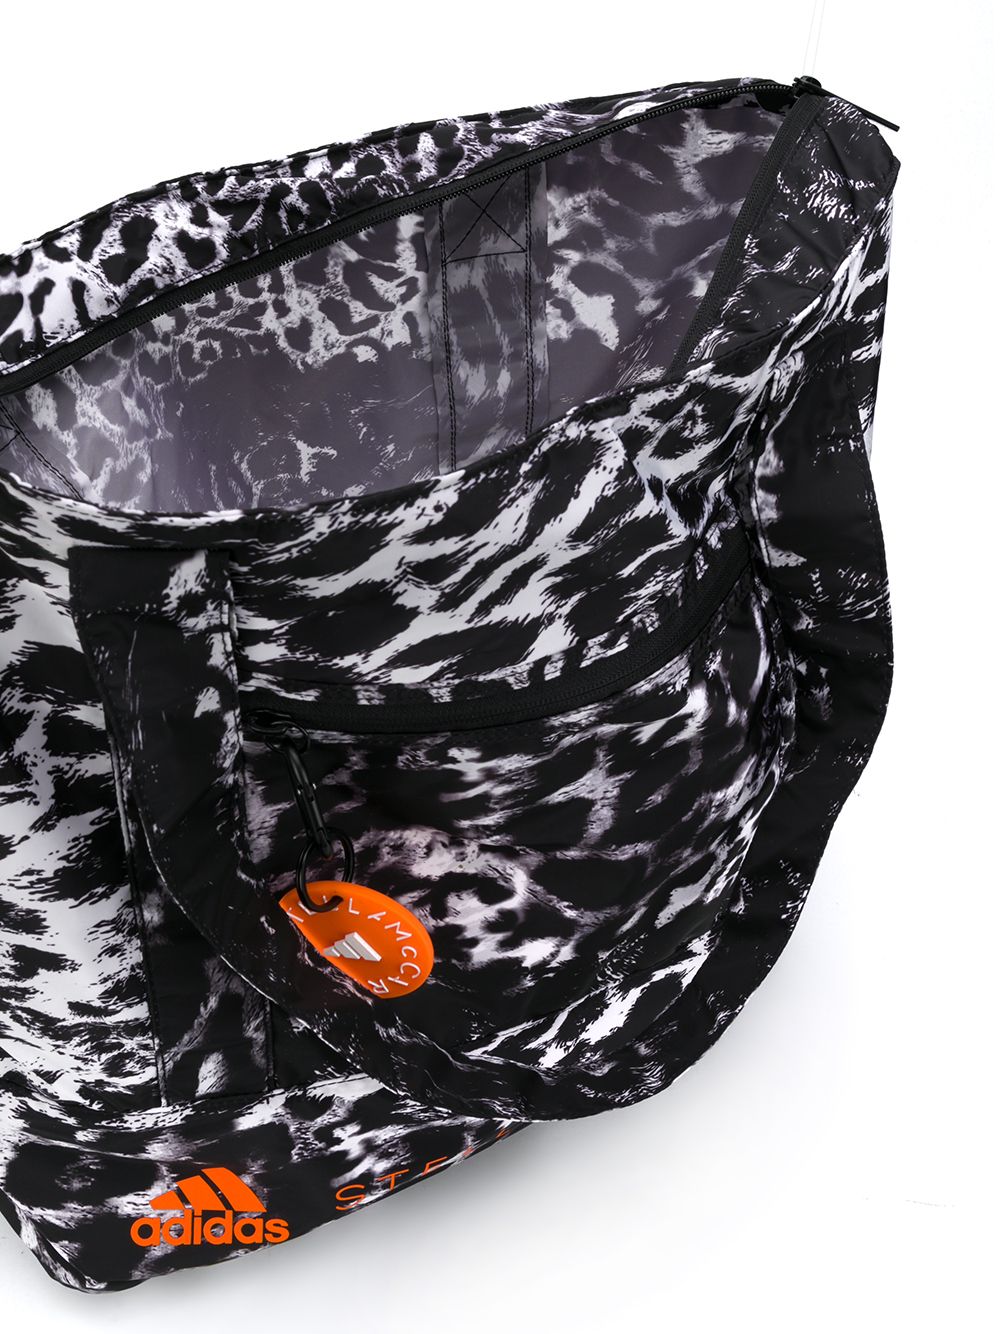 фото Adidas by stella mccartney сумка-тоут с логотипом и леопардовым принтом